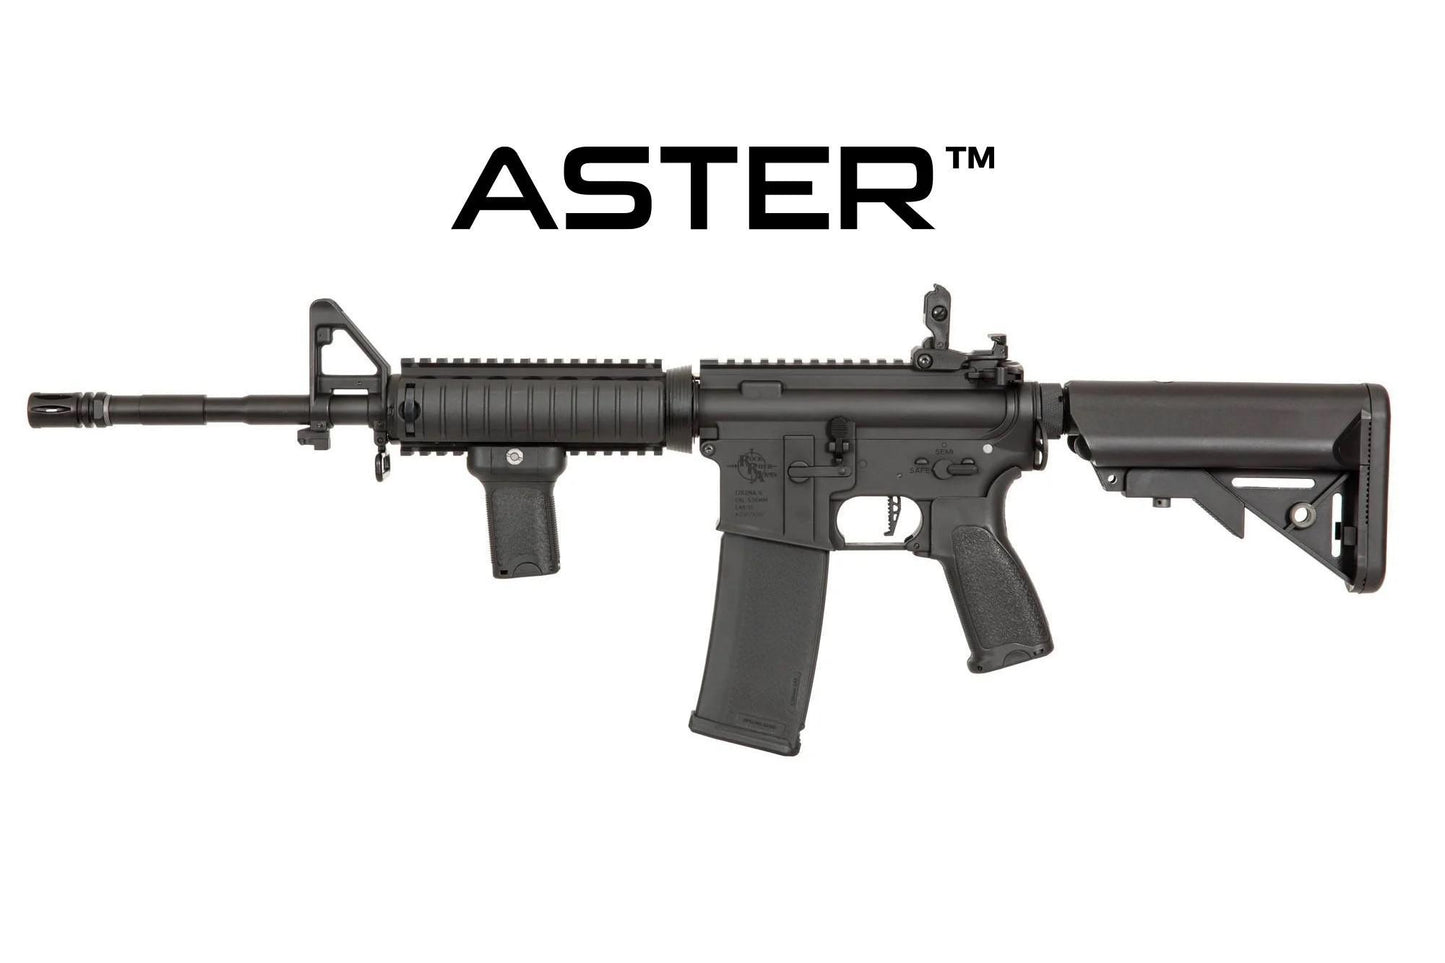 RRA SA-E03 EDGE 2.0™GATE ASTER Carbine Replica